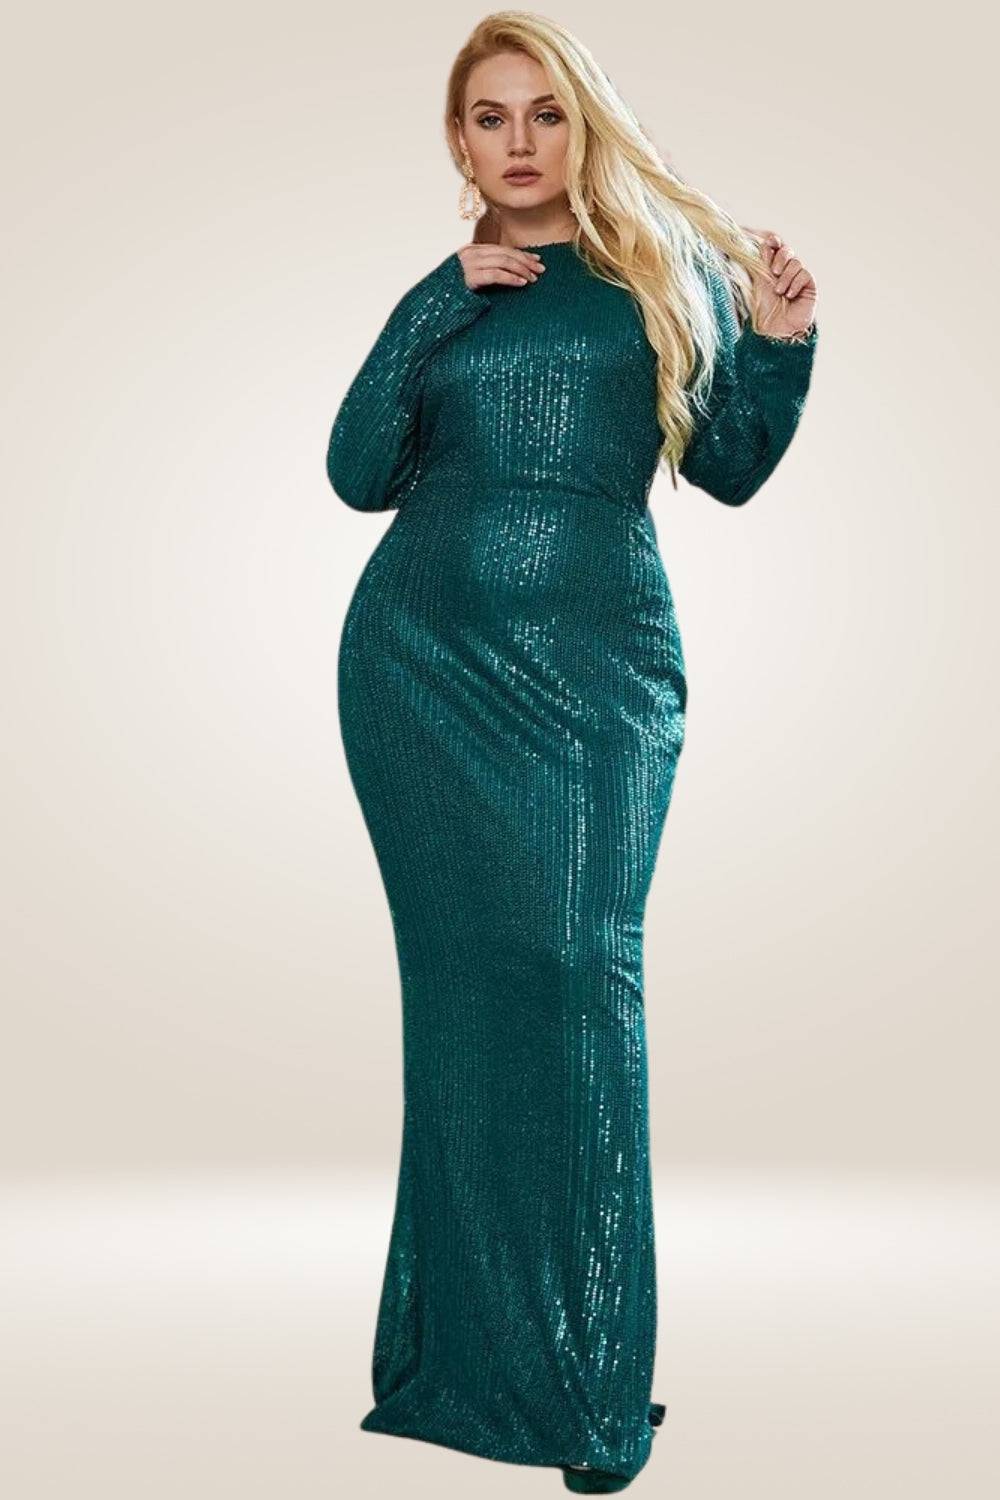 All Over Sequin Plus Size Green Maxi Dress - TGC Boutique - Plus Size Dress